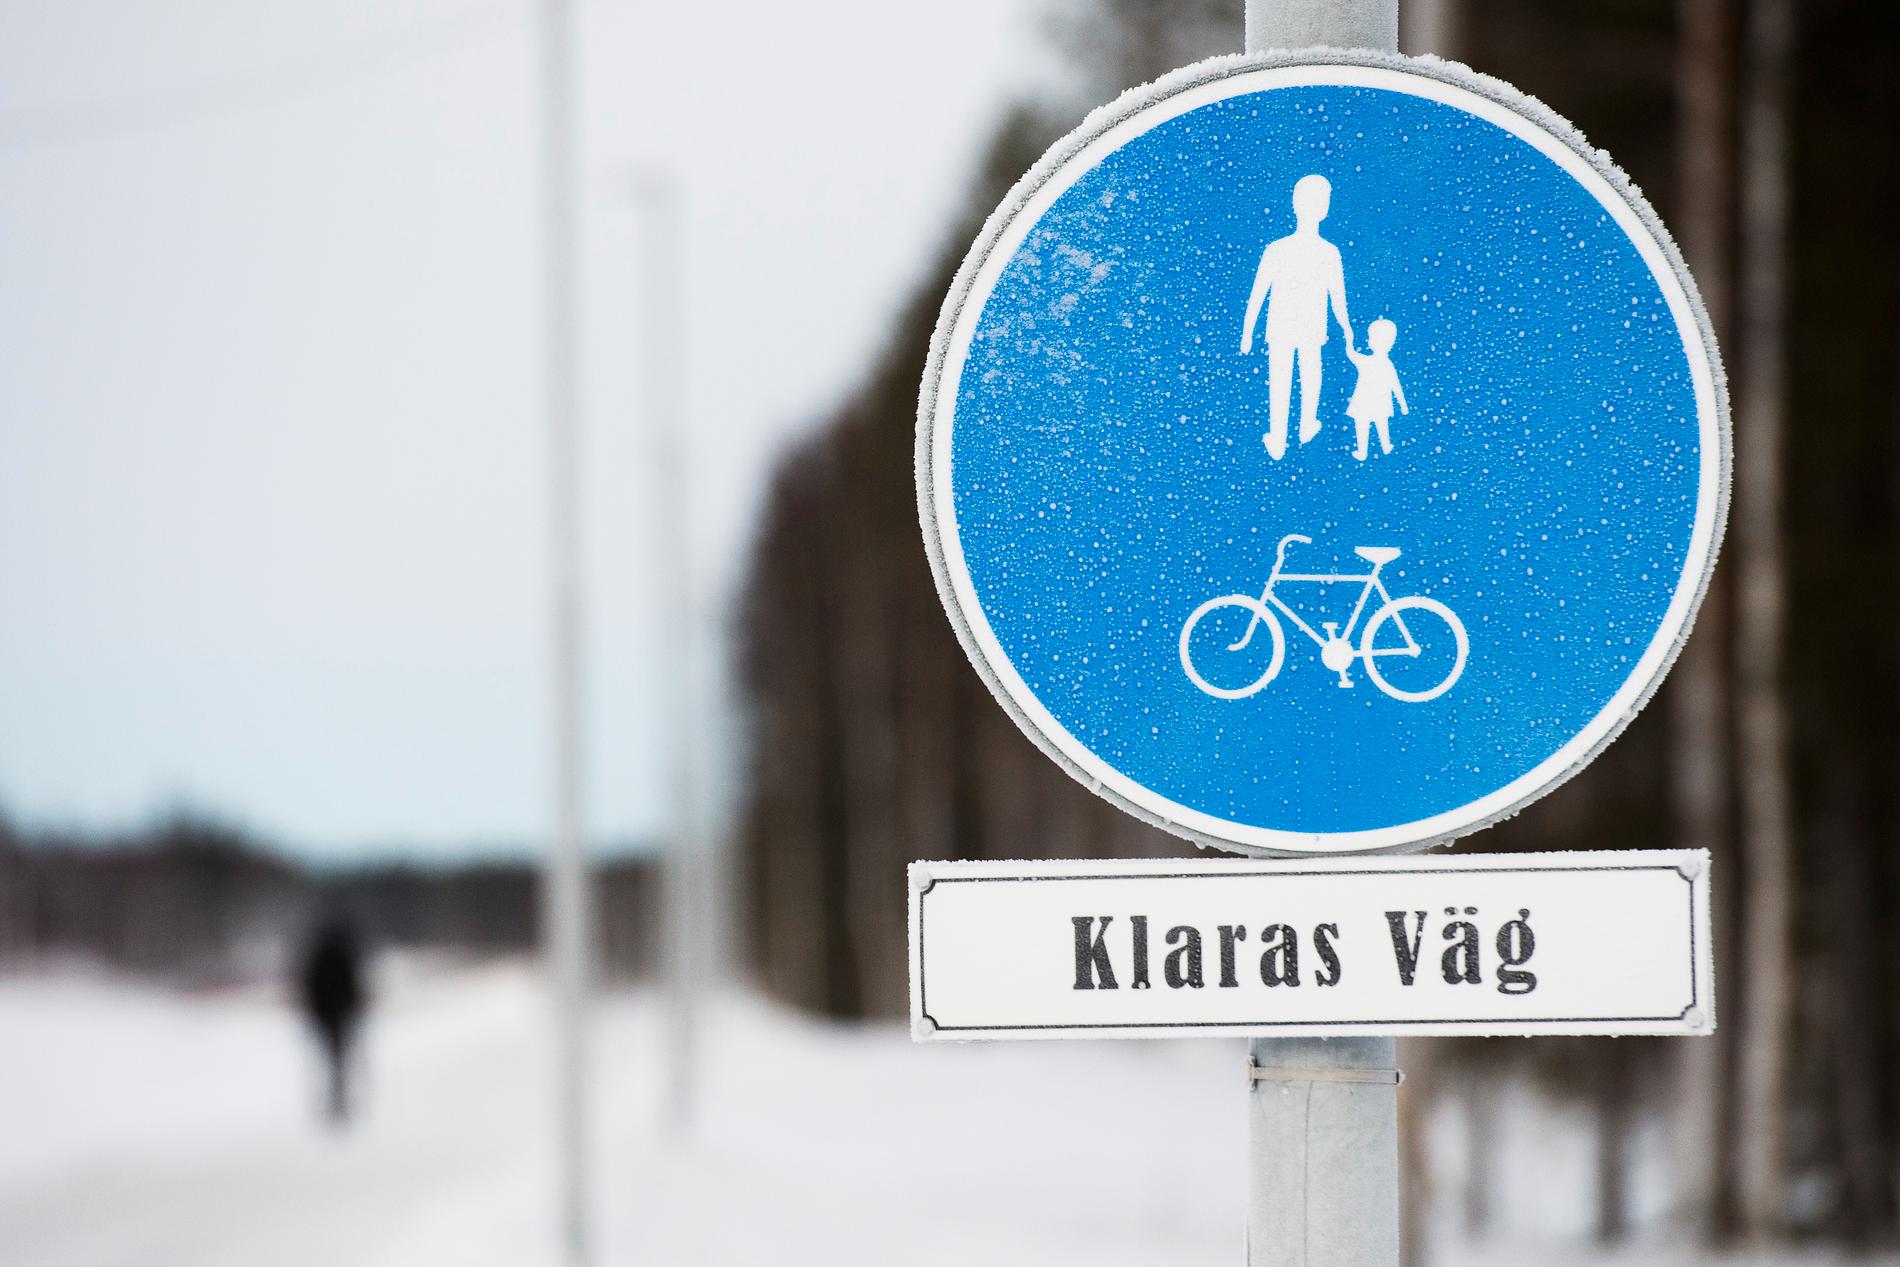 Klaras sista stora projekt var att driva igenom ett bygge av cykel- och gångväg mellan Nyborg och Kalix. Hon hann aldrig se vägen färdigställd men den är nu uppkallad efter henne.